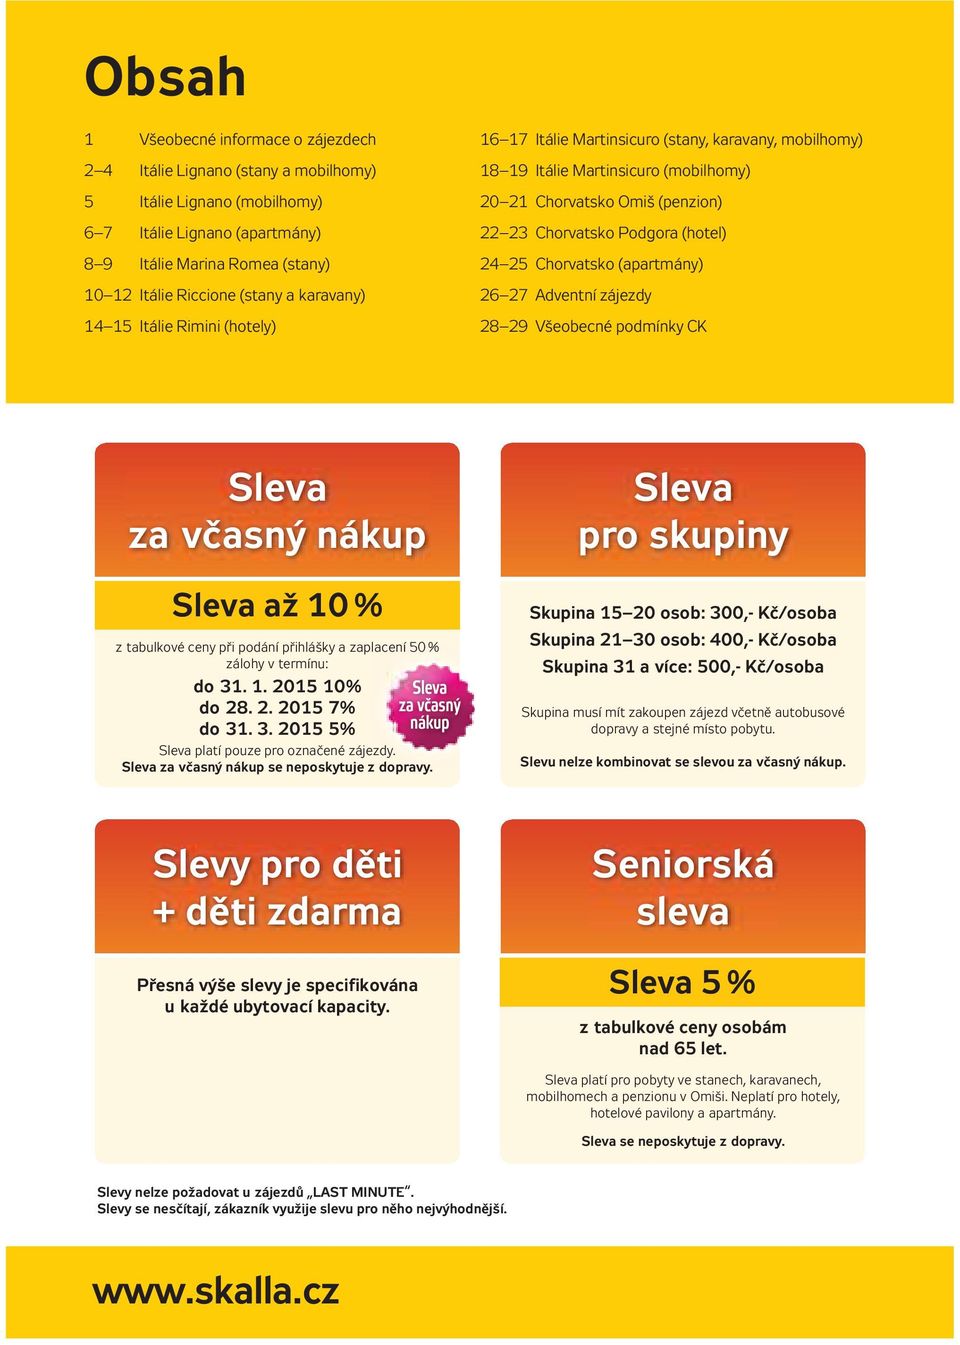 24 25 Chorvatsko (apartmány) 26 27 Adventní zájezdy 28 29 Všeobecné podmínky CK Sleva za včasný nákup Sleva až 10 % z tabulkové ceny při podání přihlášky a zaplacení 50 % zálohy v termínu: do 31. 1. 2015 10% do 28.